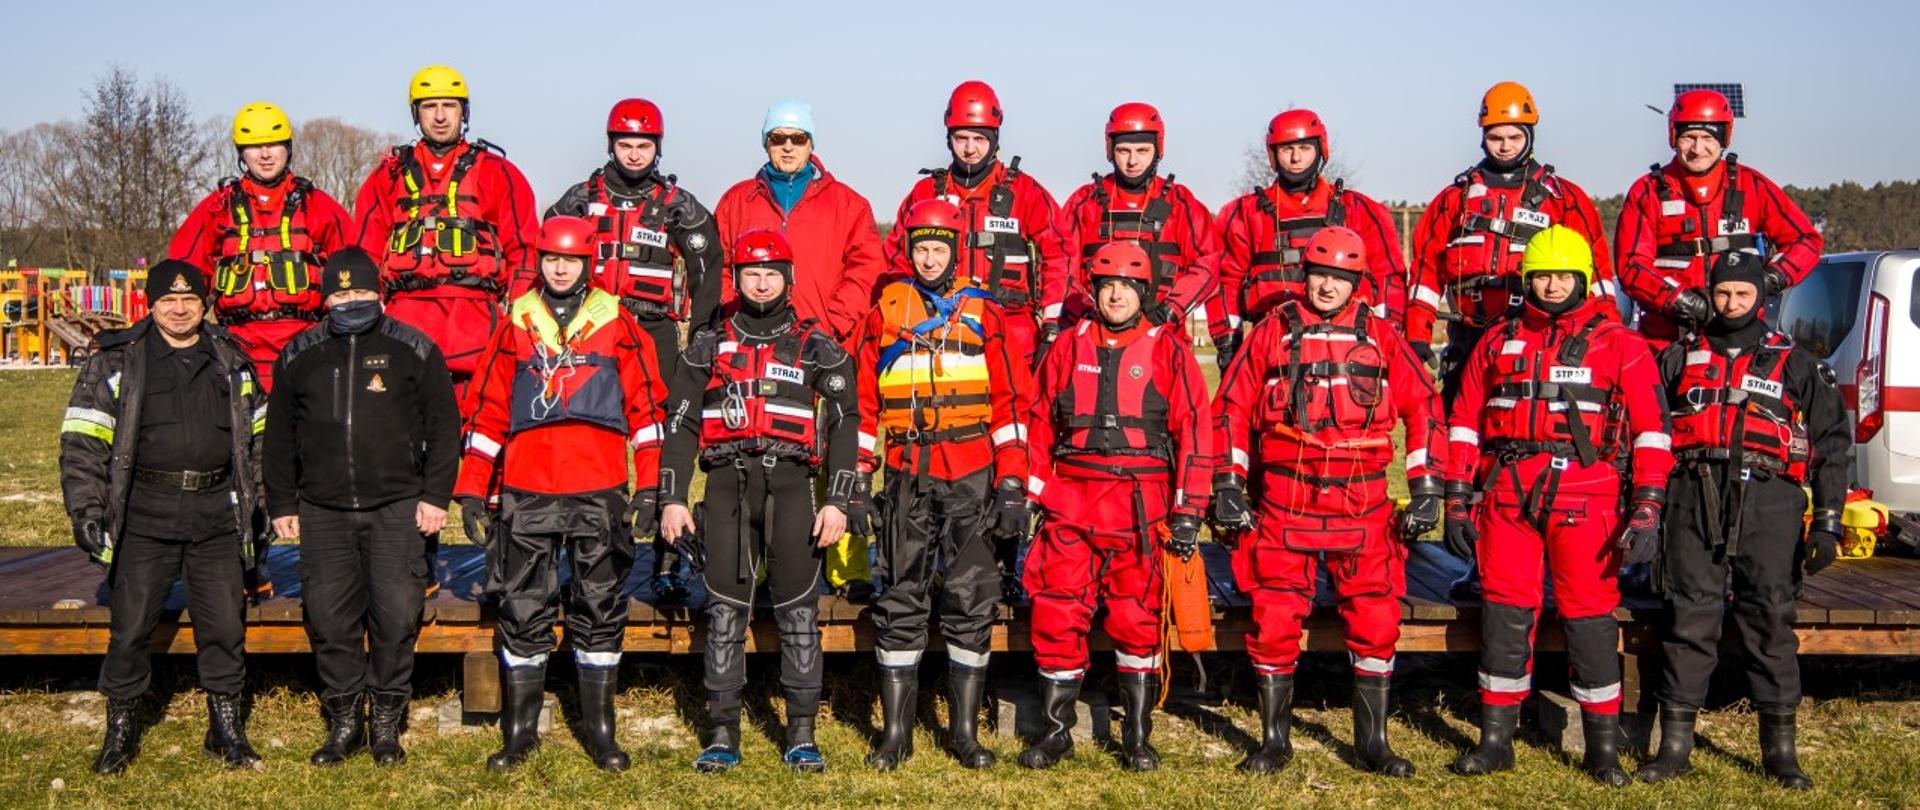 Szkolenie i ćwiczenia z ratownictwa lodowego - wspólne zdjęcie grupowe na miejscu ćwiczeń praktycznych. Strażacy PSP, uczestniczy ćwiczeń w ubraniach wypornościowych i kaskach na głowach.